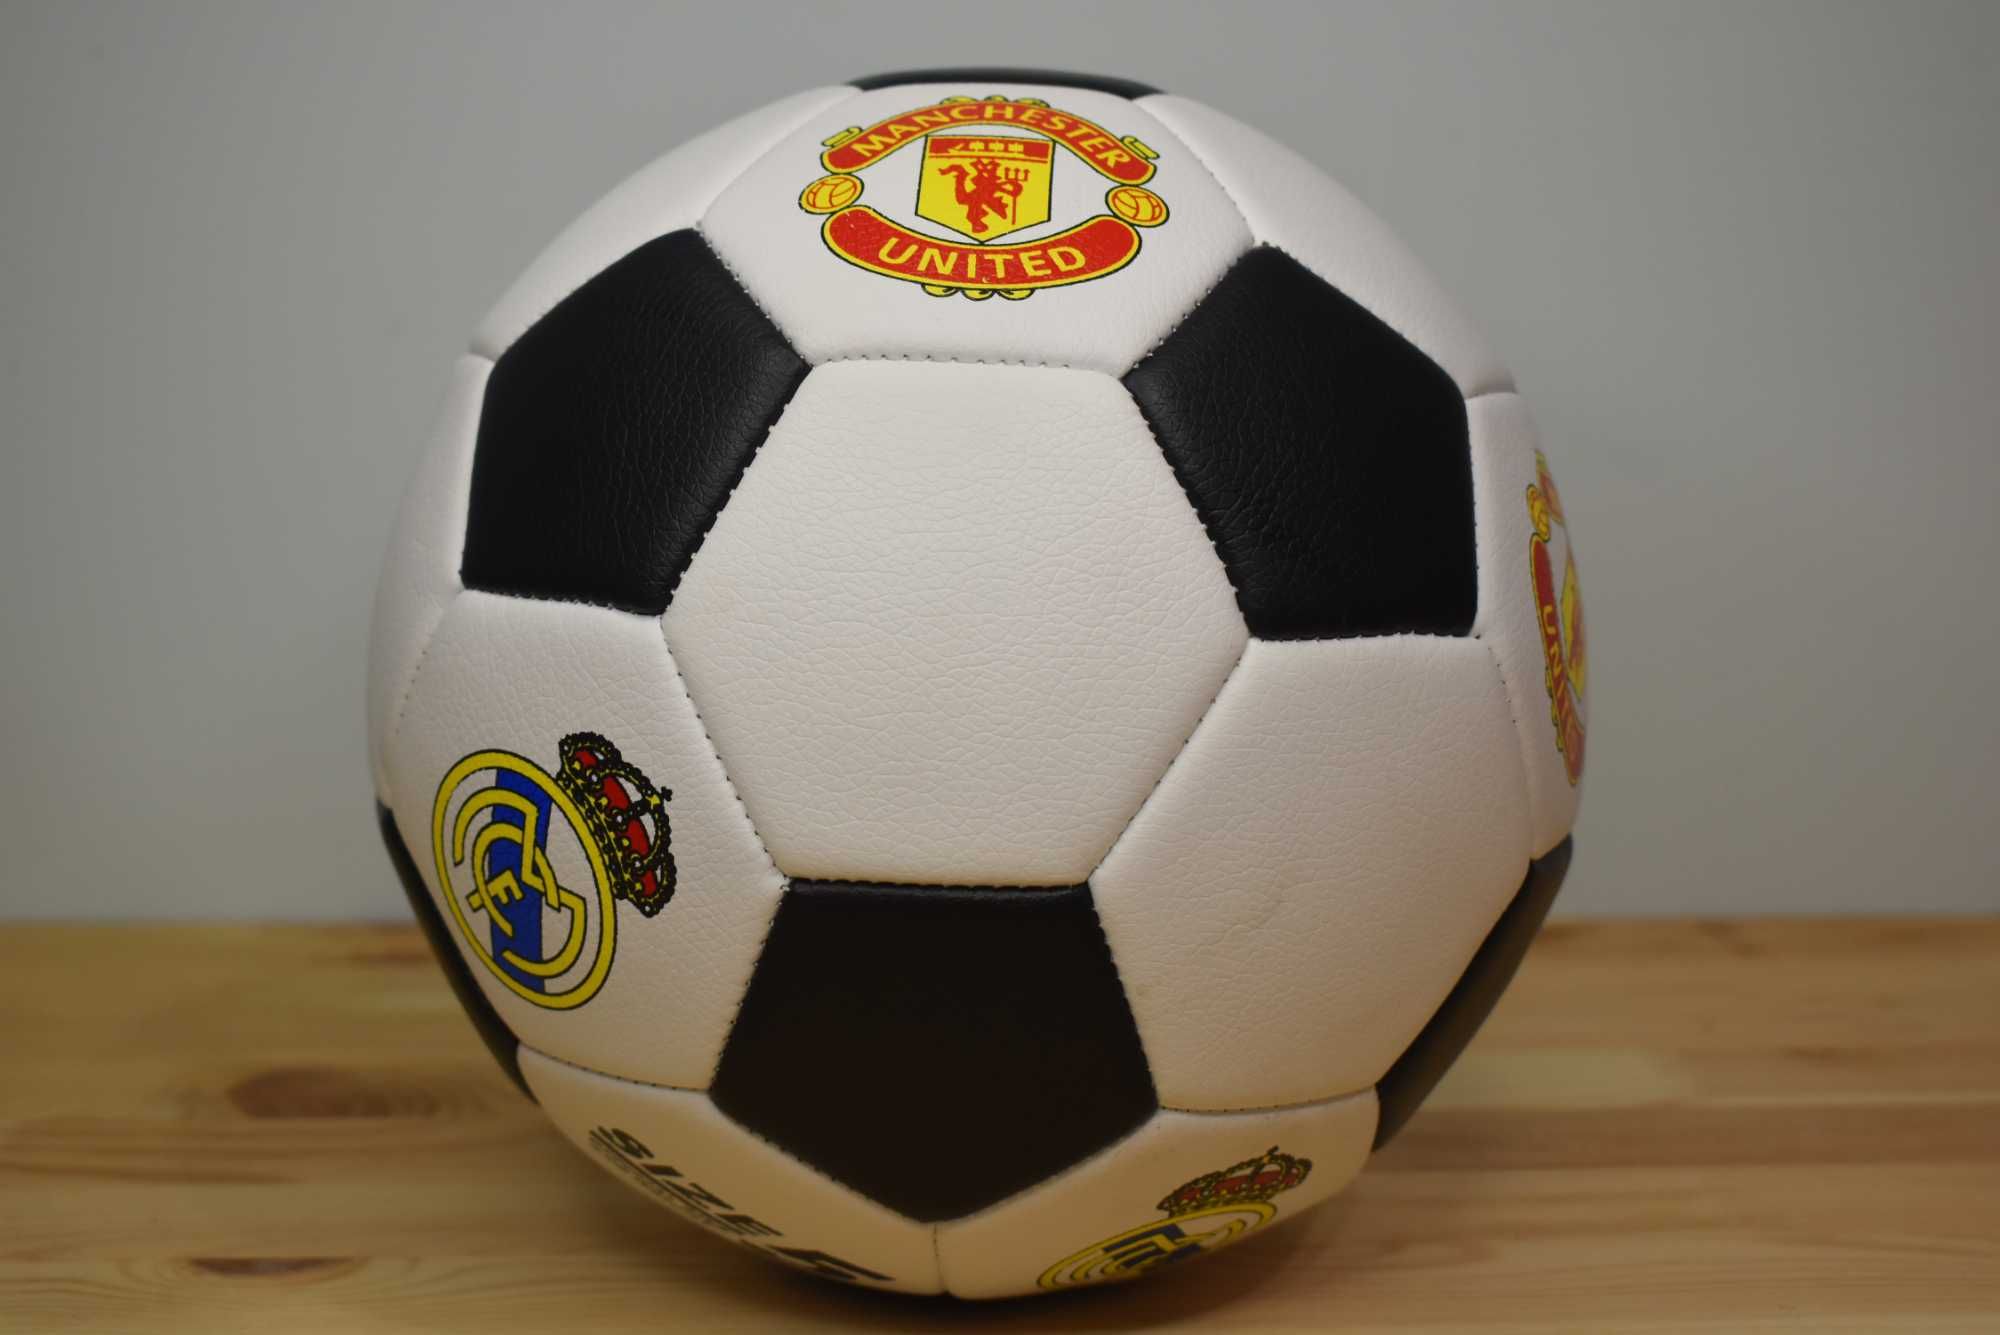 Мяч футбольный, вес 420 граммов, материал PU, баллон резиновый